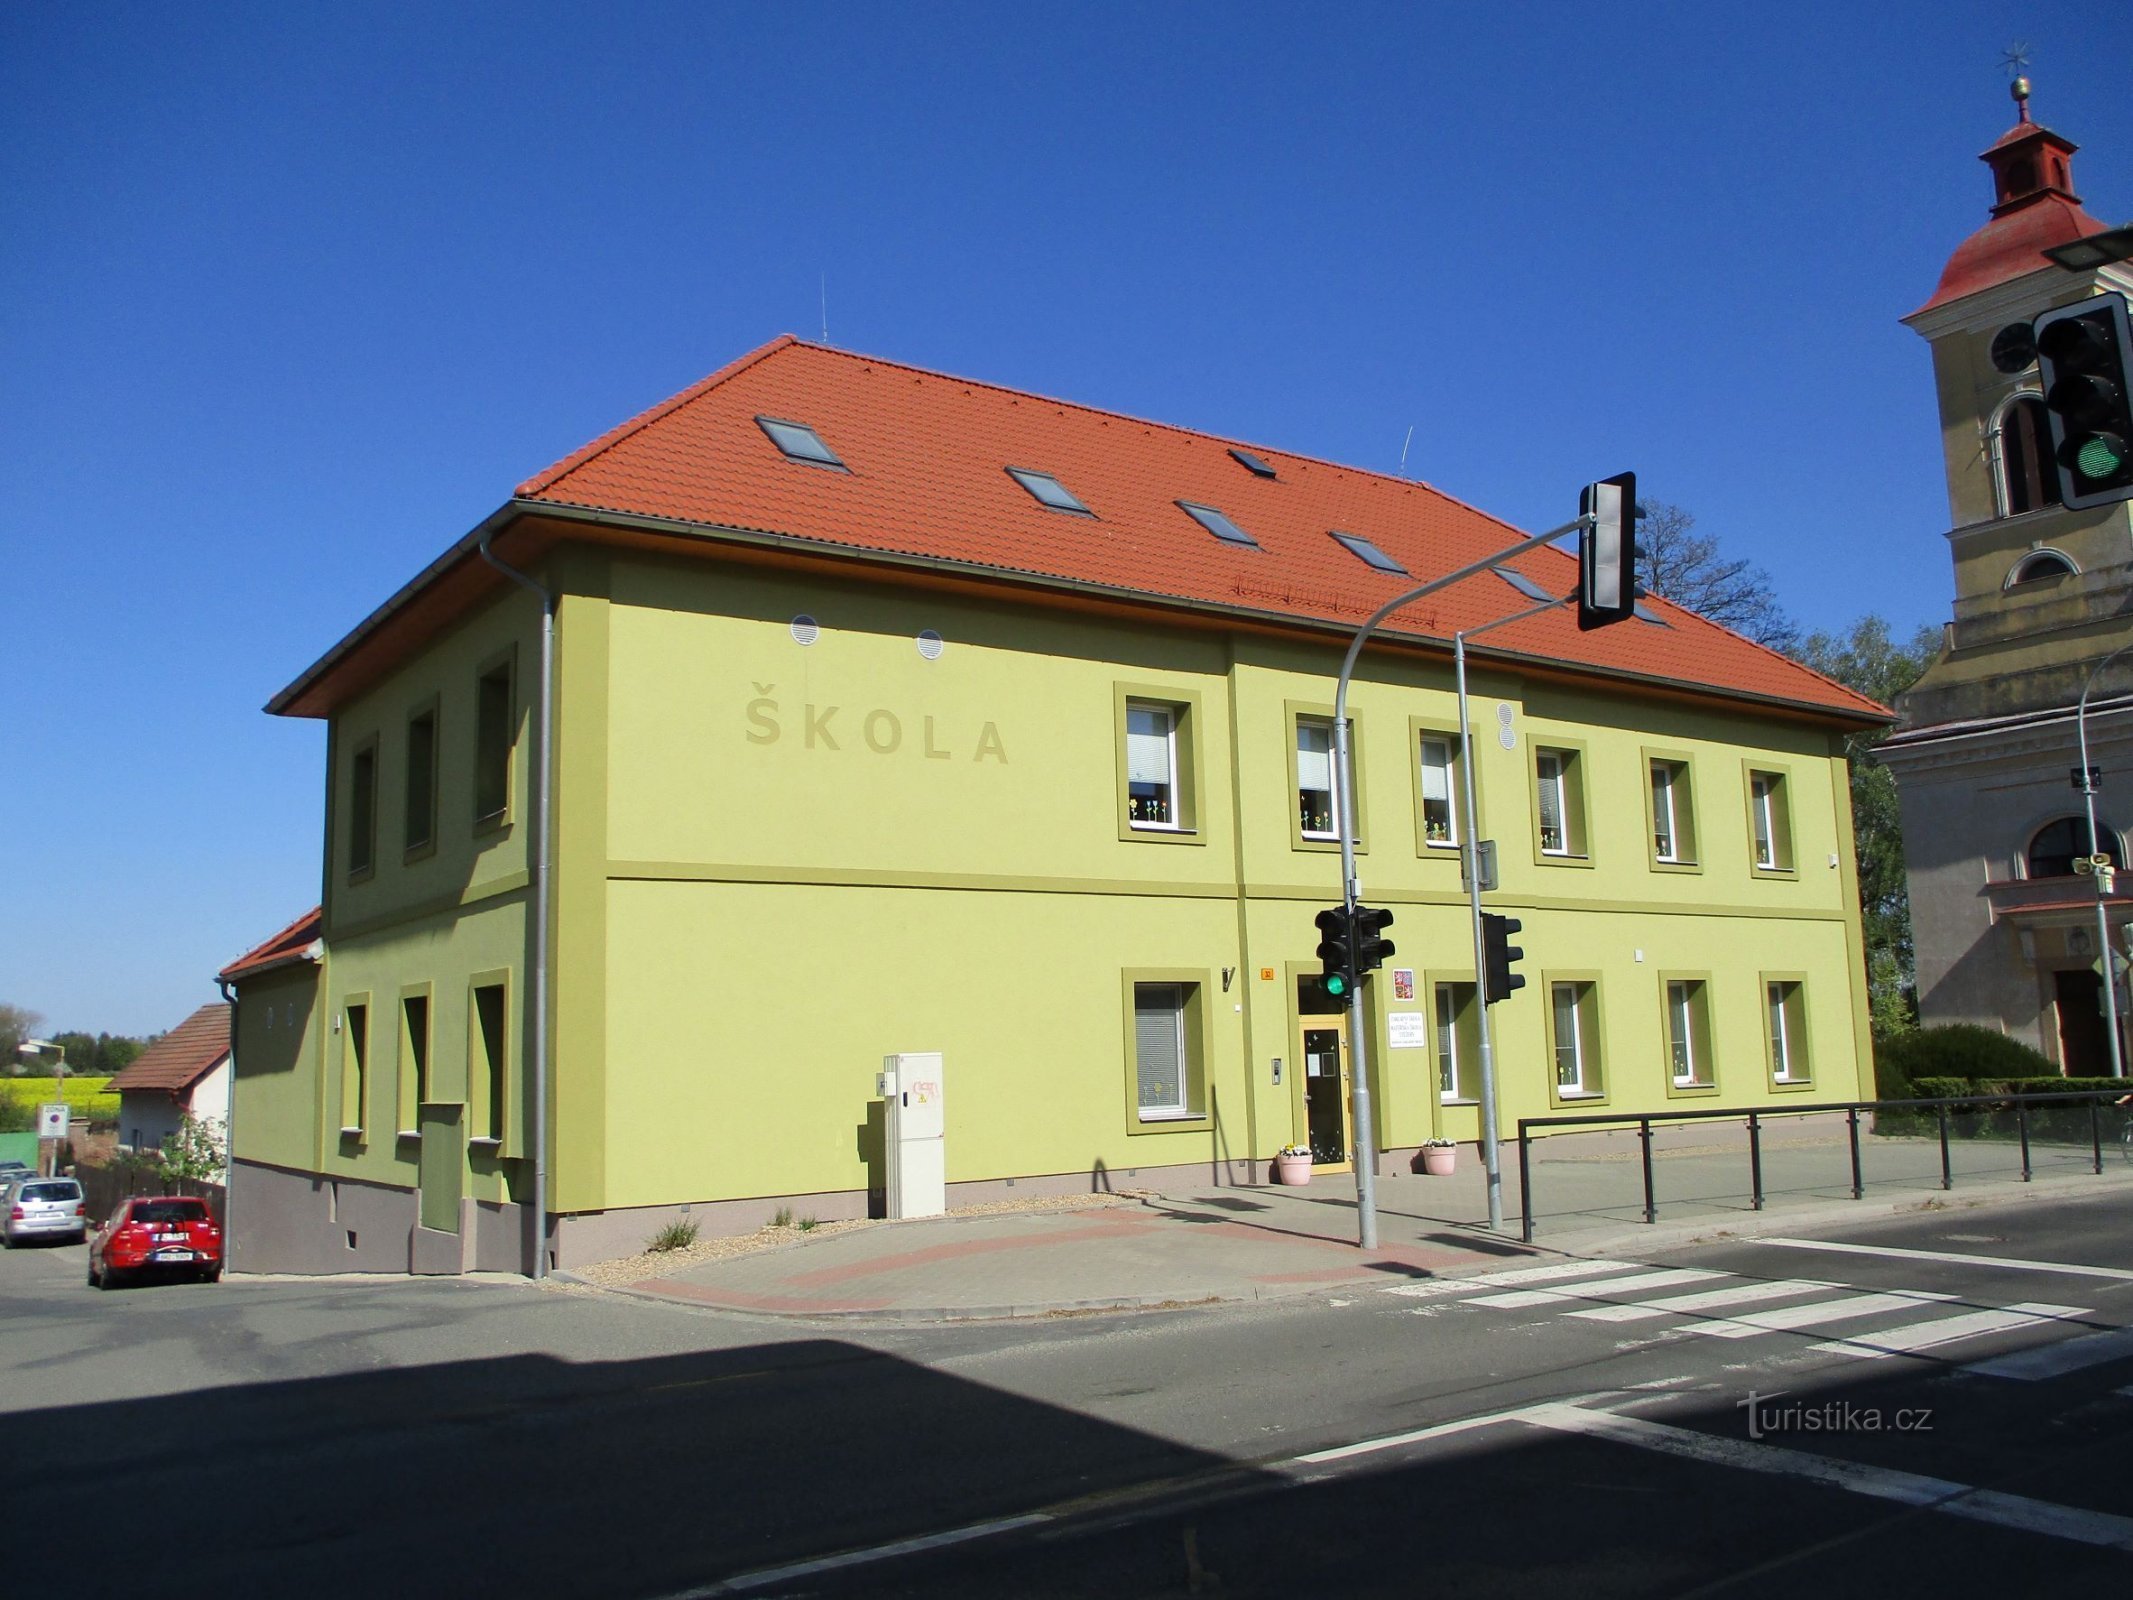 Skola (Stežery, 27.4.2020/XNUMX/XNUMX)